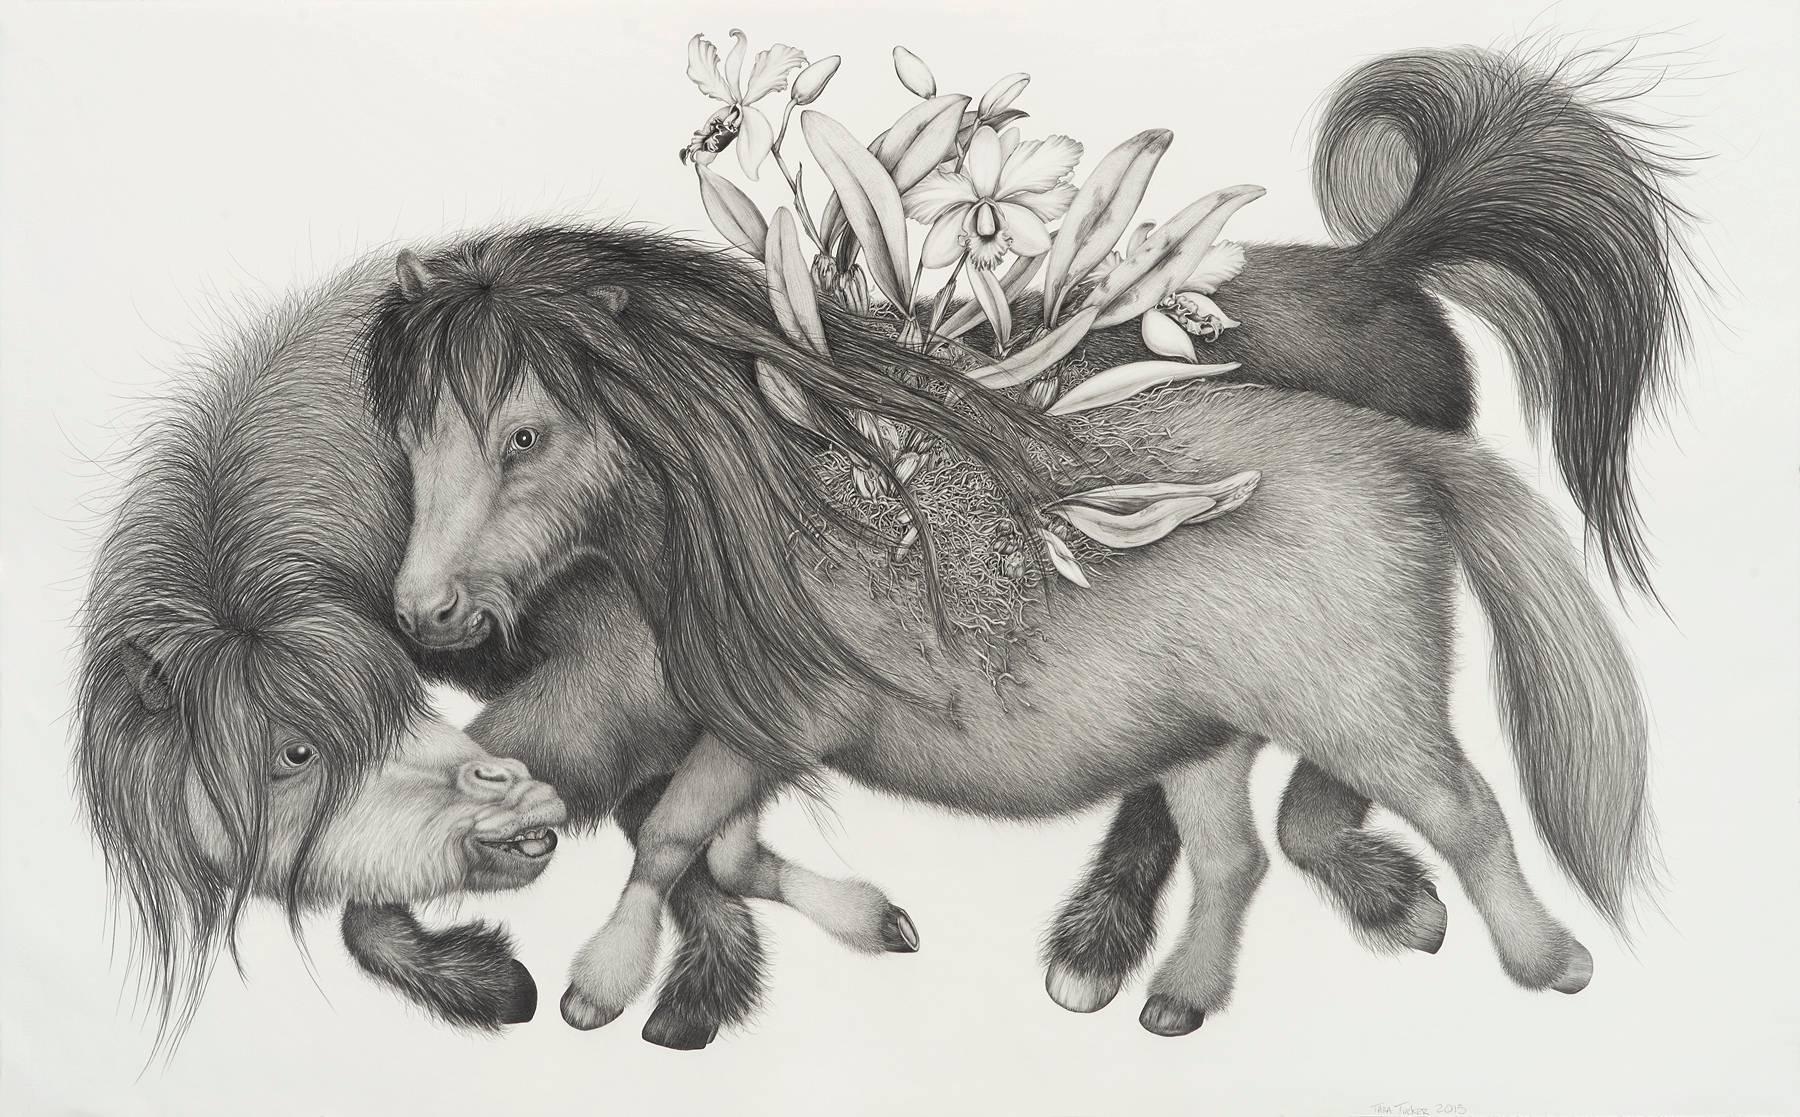 Tara Tucker Animal Art - Pocket full'a horses